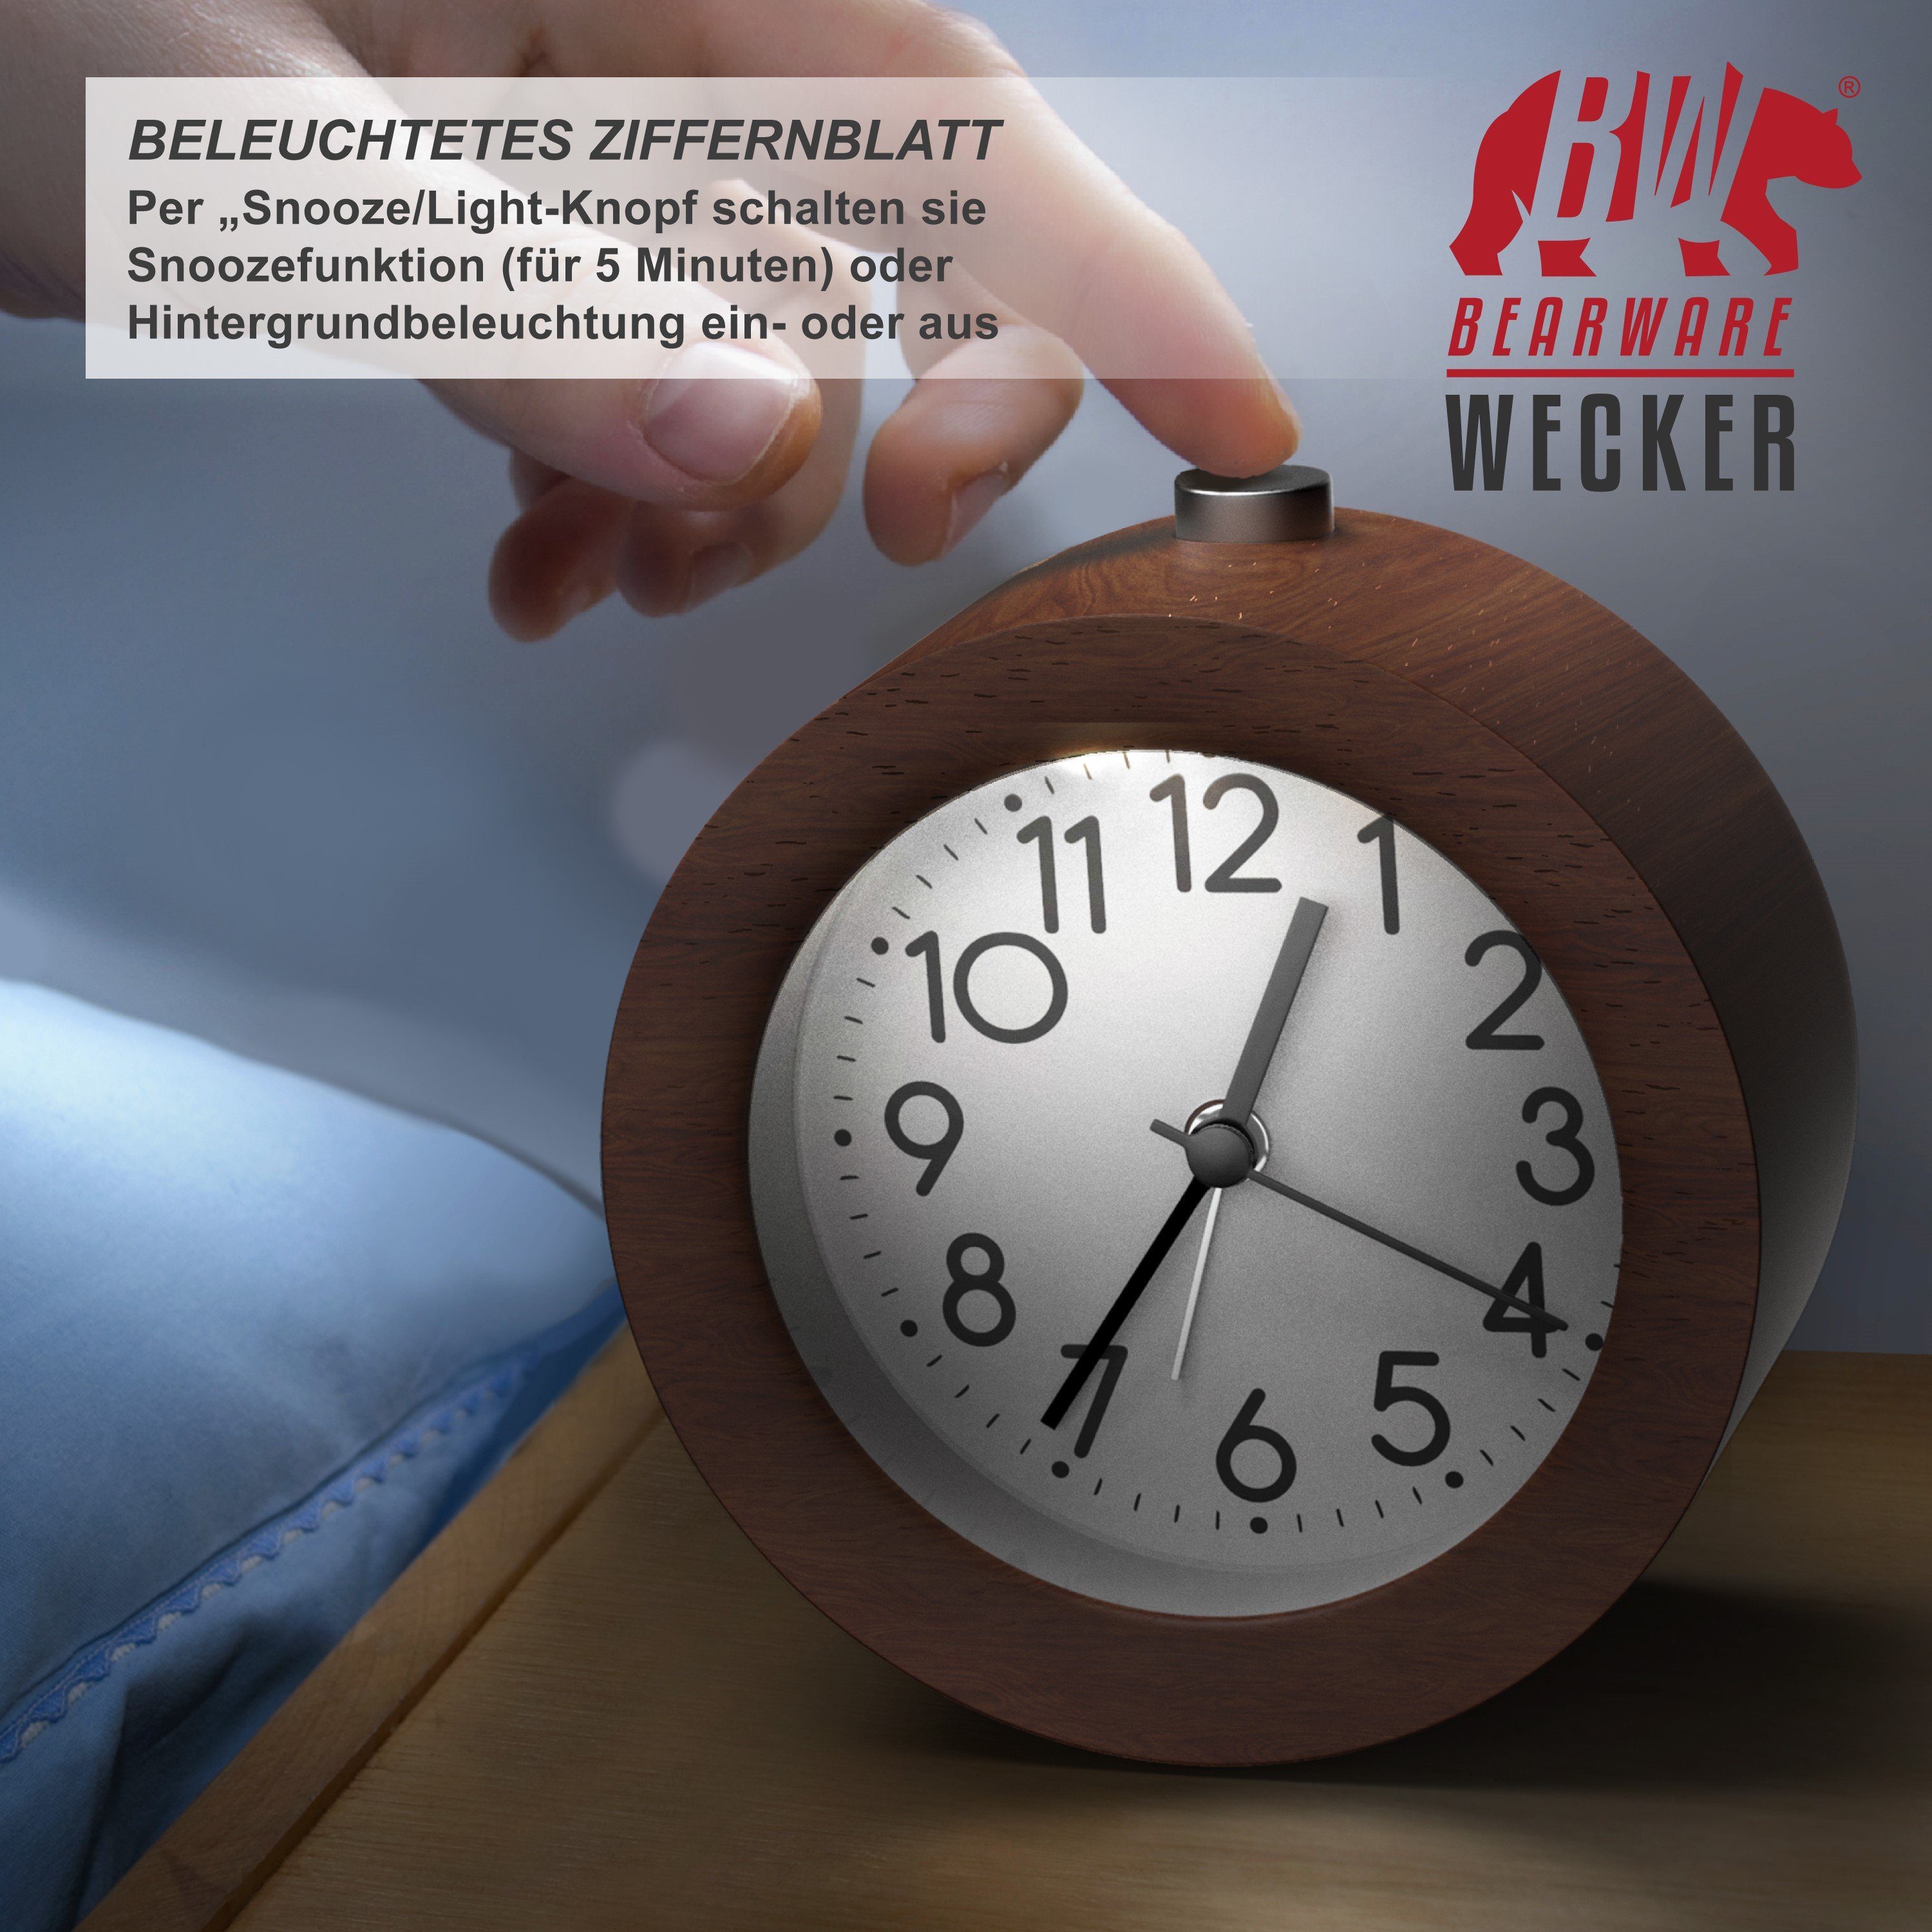 BEARWARE Wecker Analoge Weckuhr mit & Holzkorpus Ziffernblatt Nussbaum rundem beleuchtetem